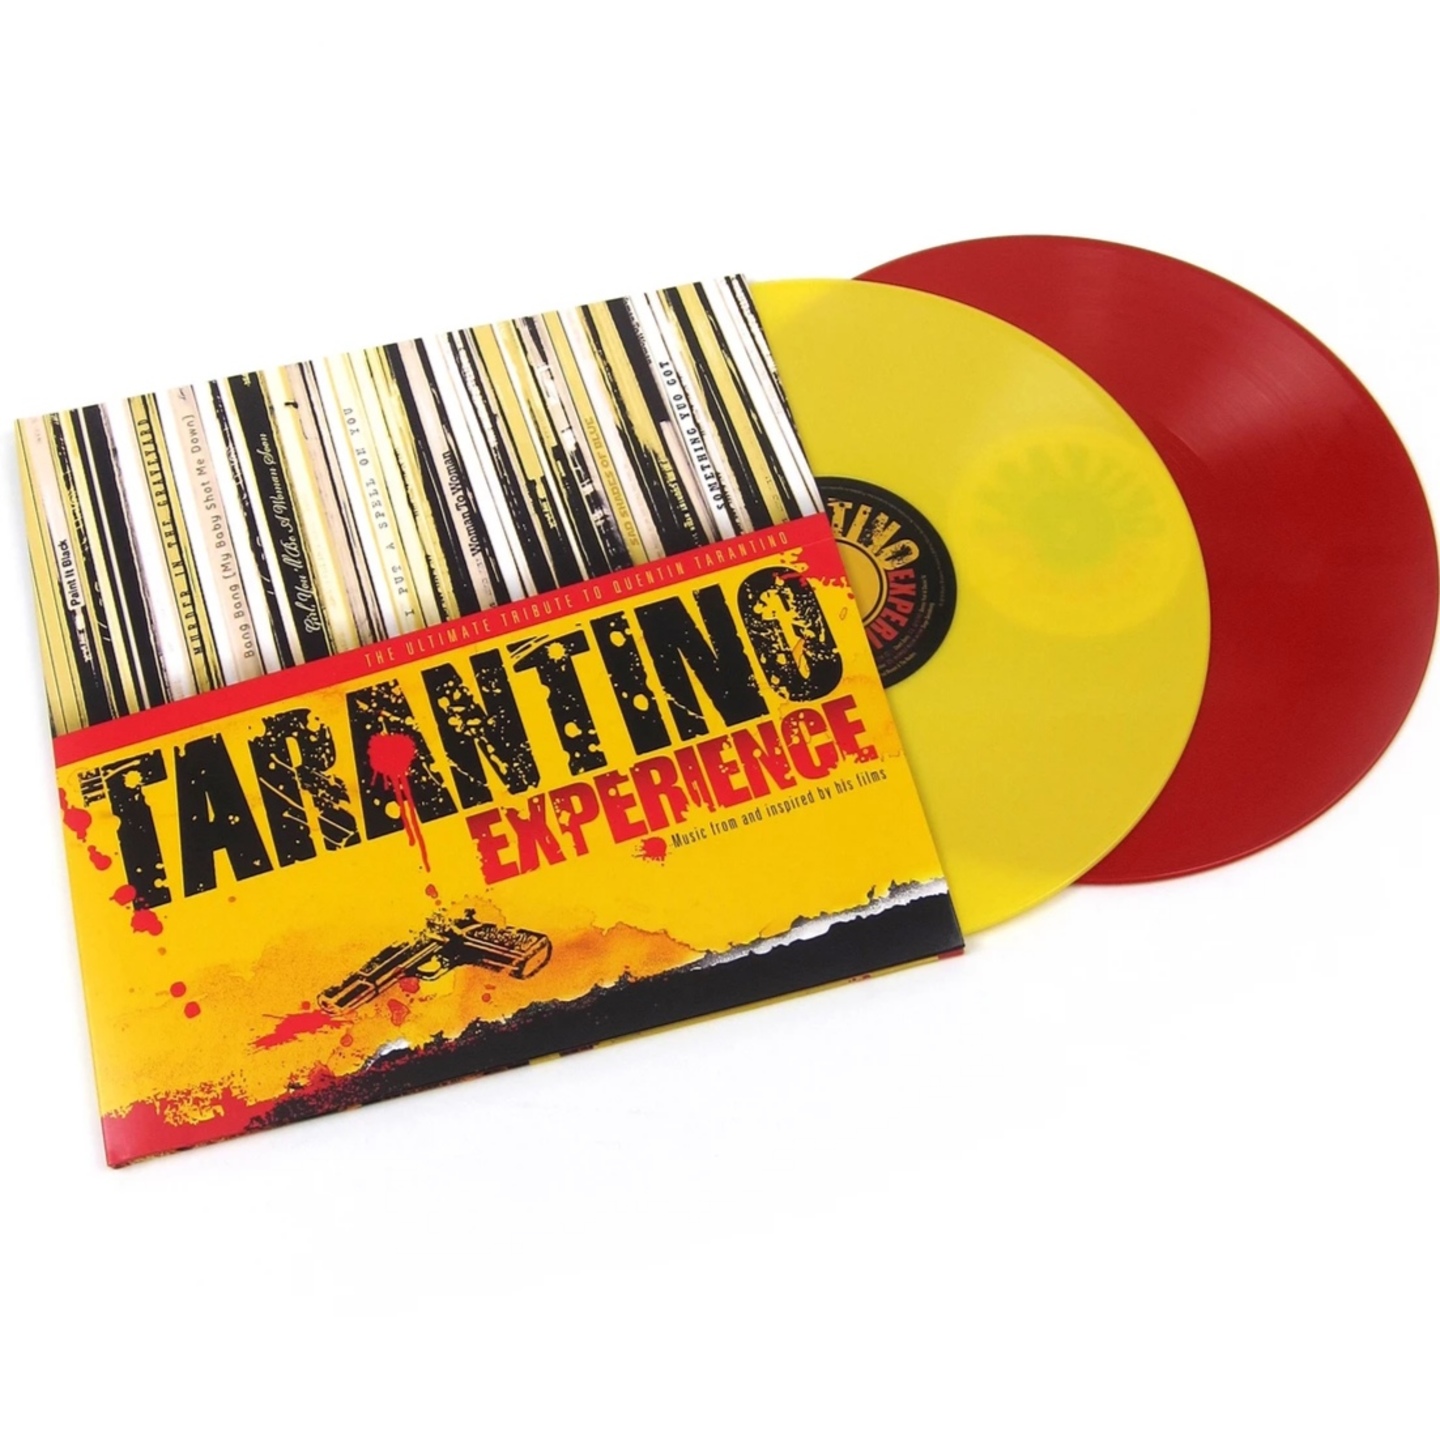 VA - Tarantino Experience Ultimate Tribute to Quentin Tarantino 2xLP 180gram Red & Yellow vinyl